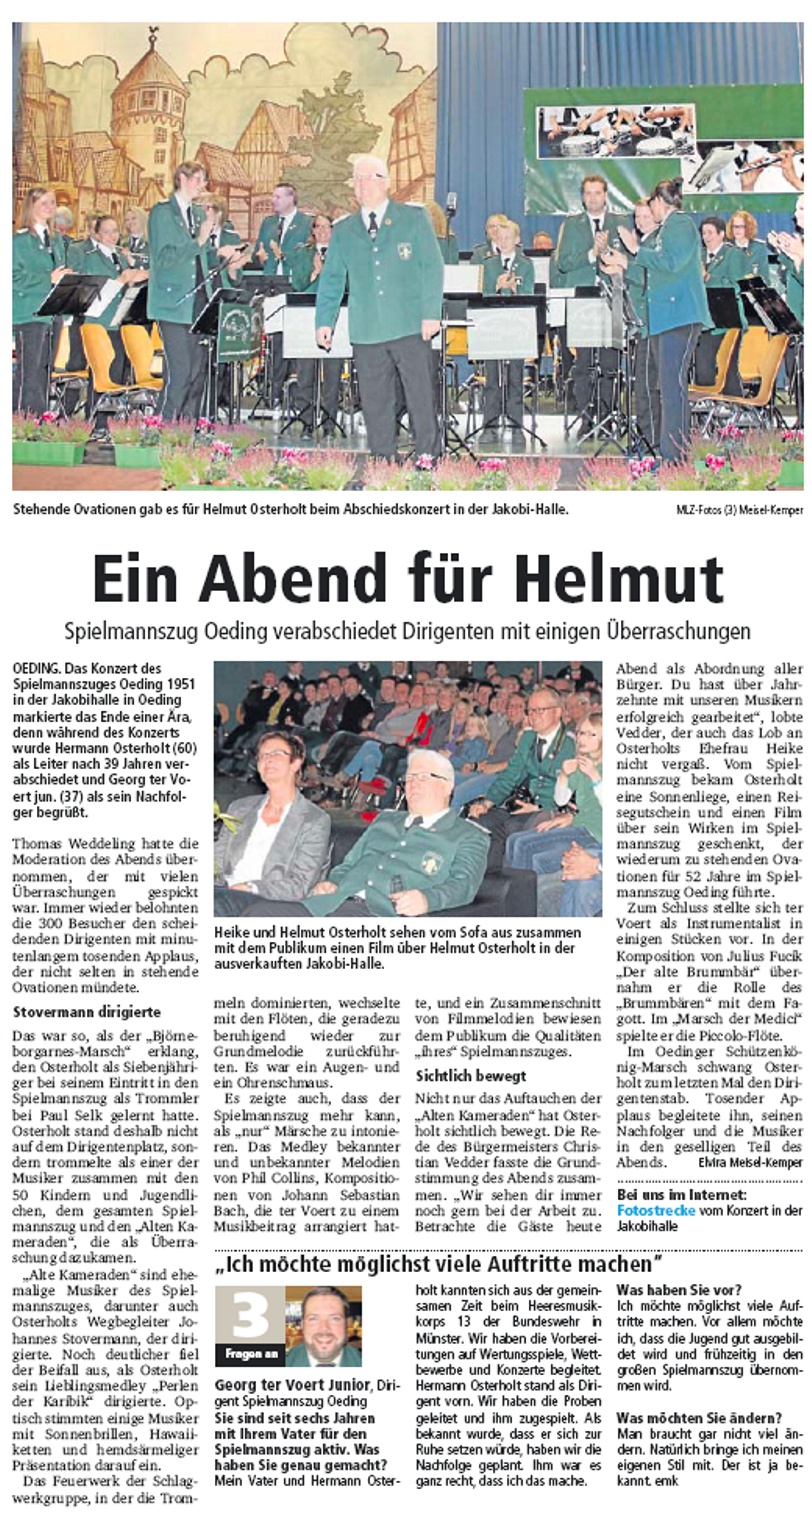 Münsterland Zeitung 04.11.2013 - Ein Abend für Helmut